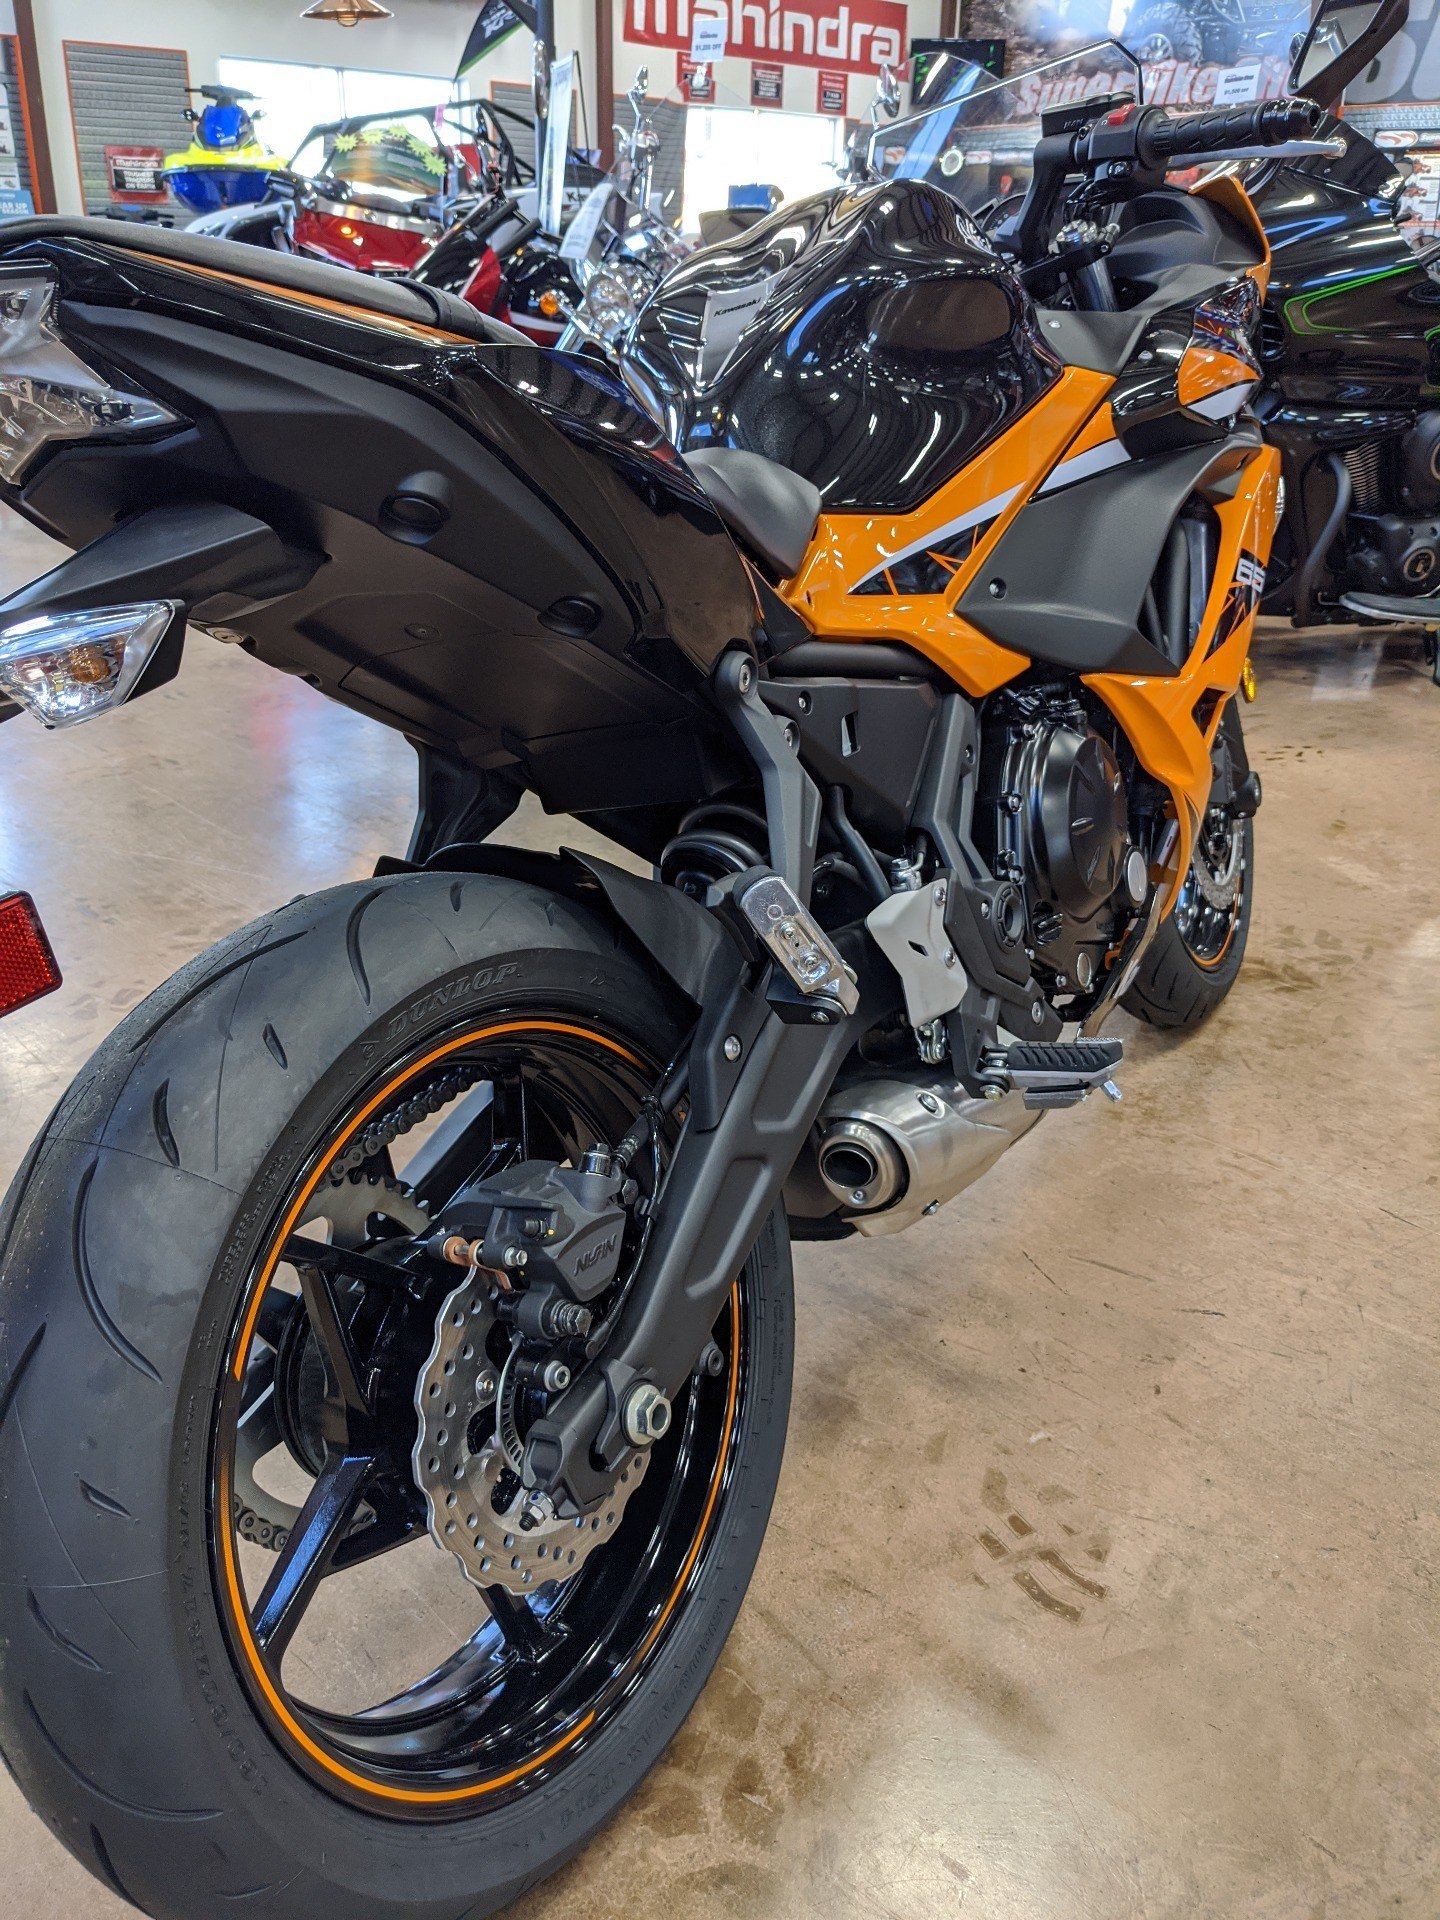 2019 Kawasaki Ninja 650 ABS 5